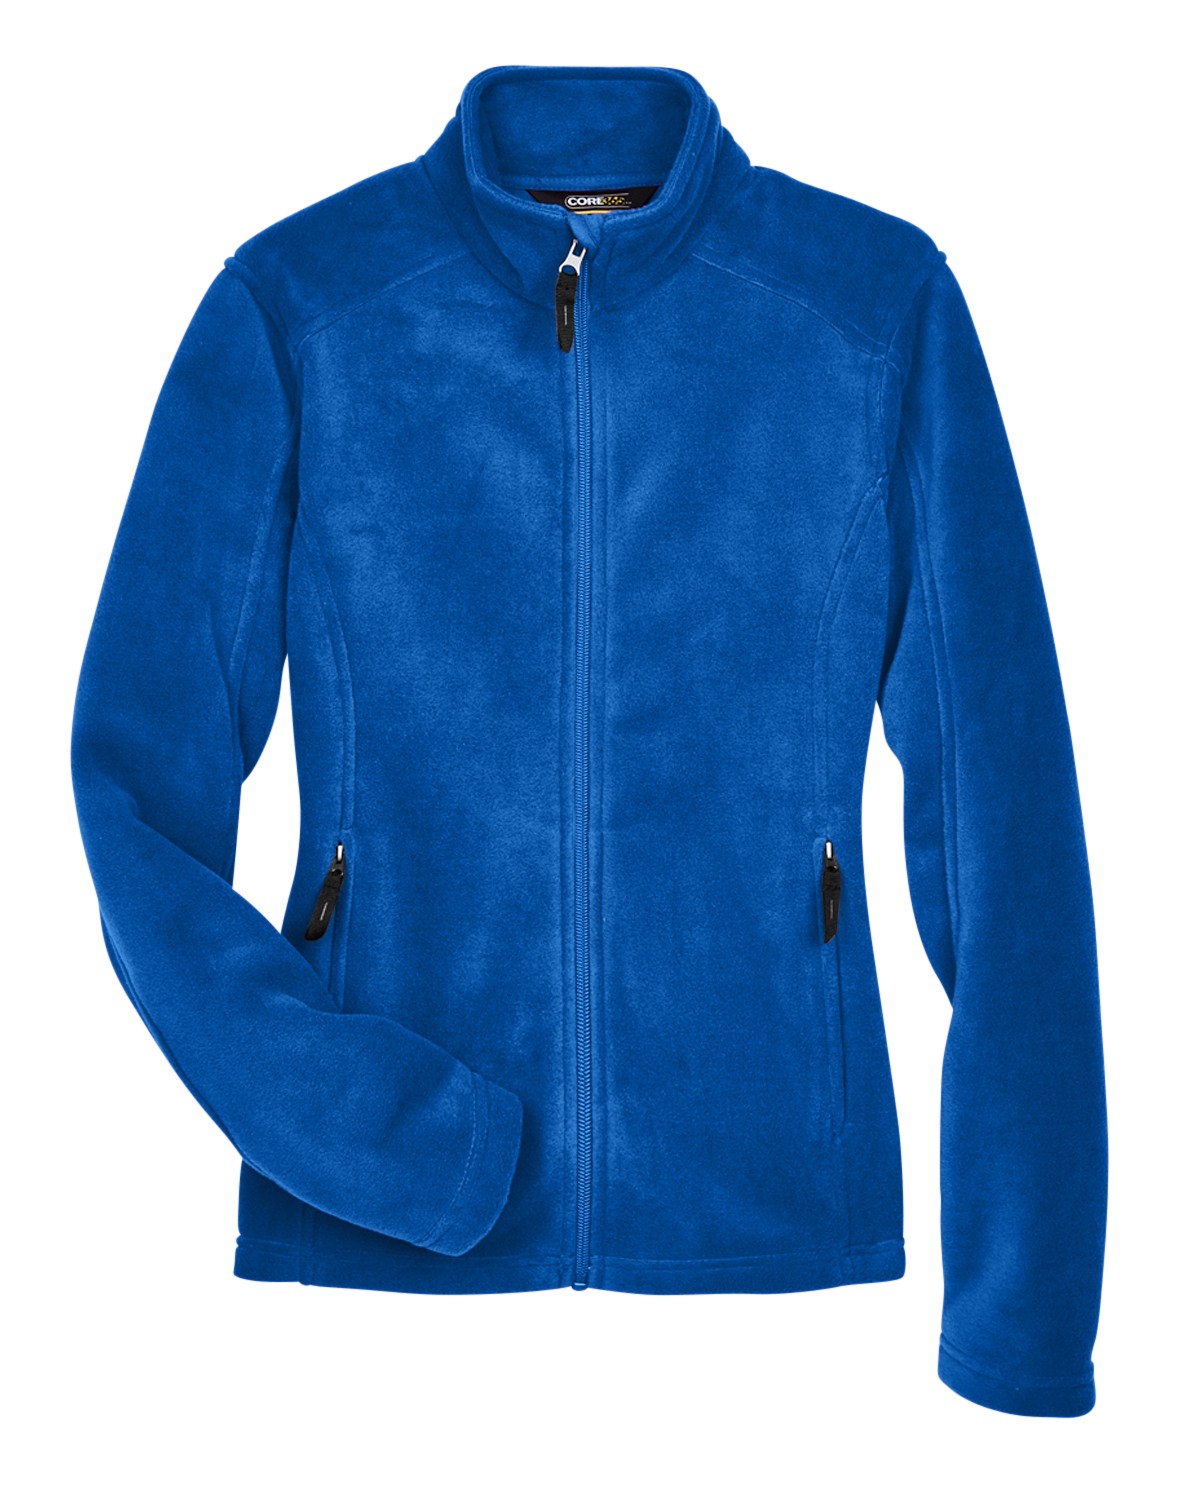 ERCOT Core 365 Journey Fleece Jacket Ladies 